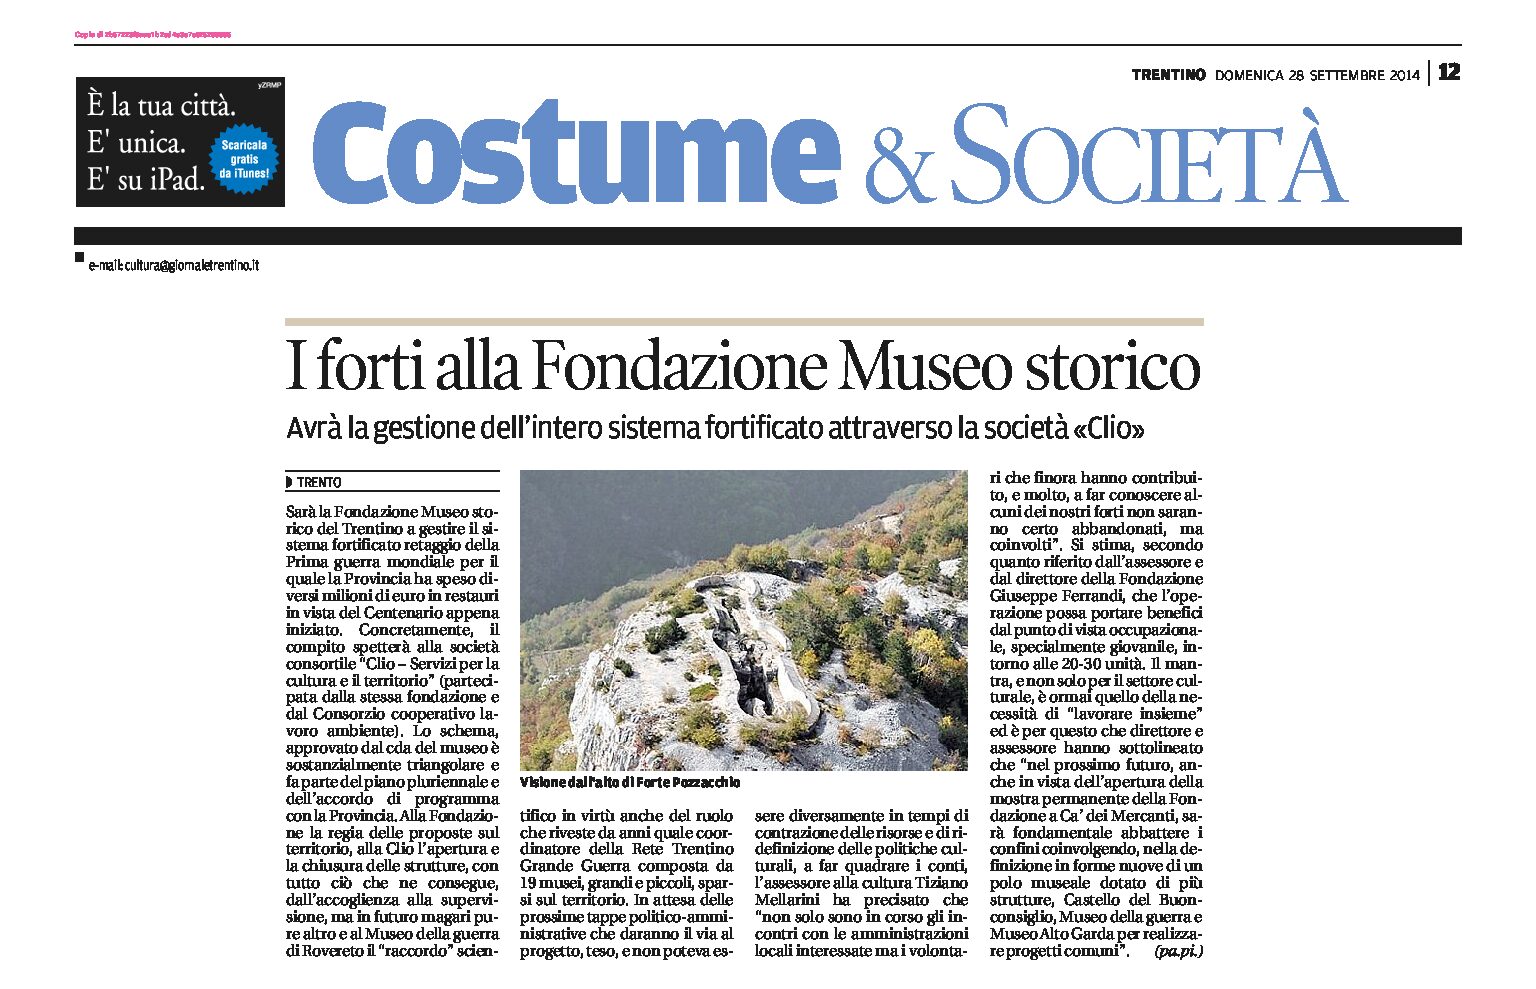 La Fondazione Museo storico del Trentino avrà in gestione i forti